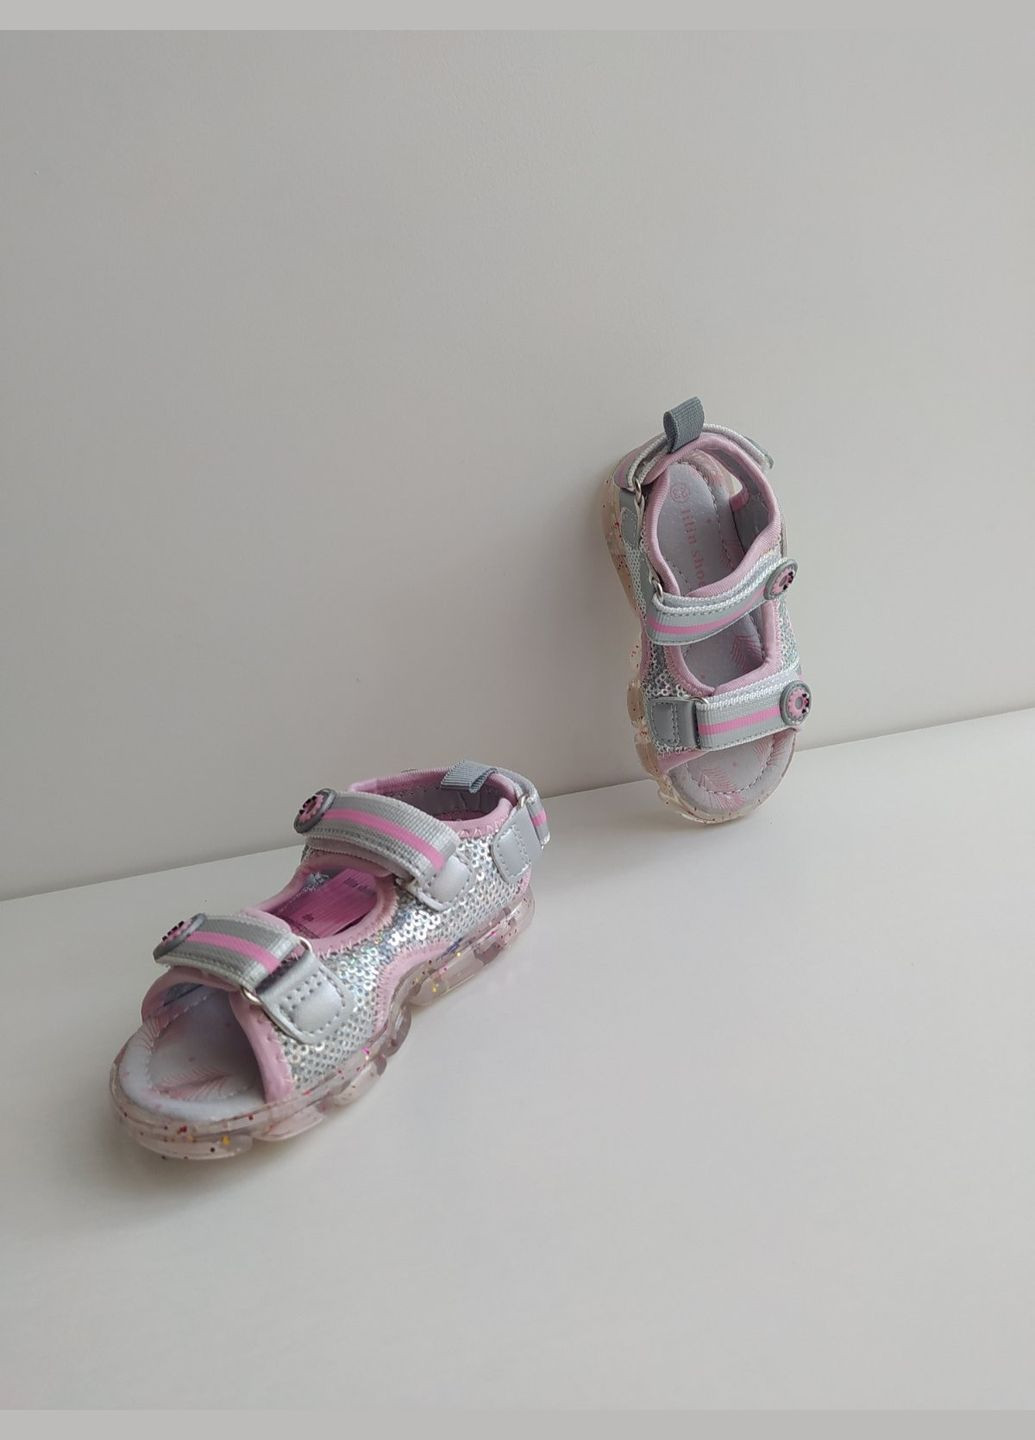 Серые детские босоножки с подсветкой 23 г 15 см серый артикул б270 Lilin Shoes